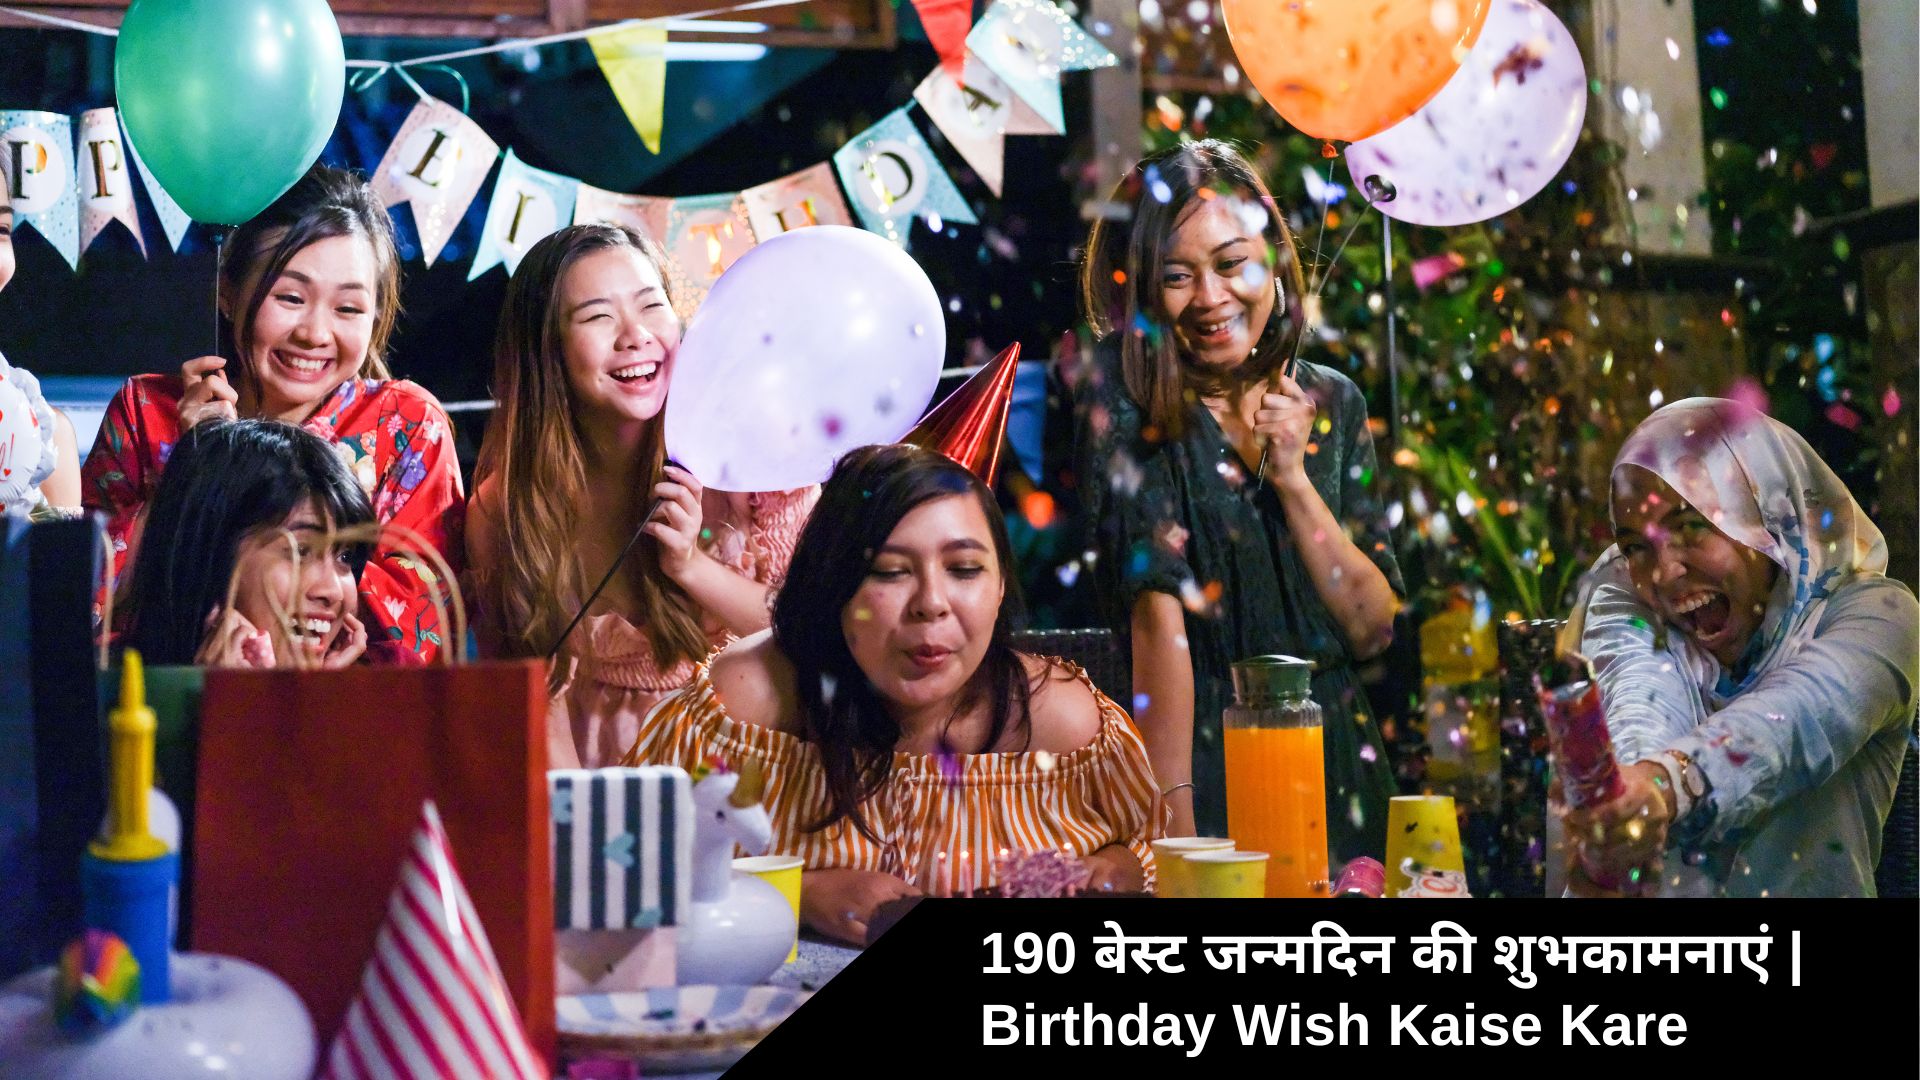 Birthday Wish Kaise Kare